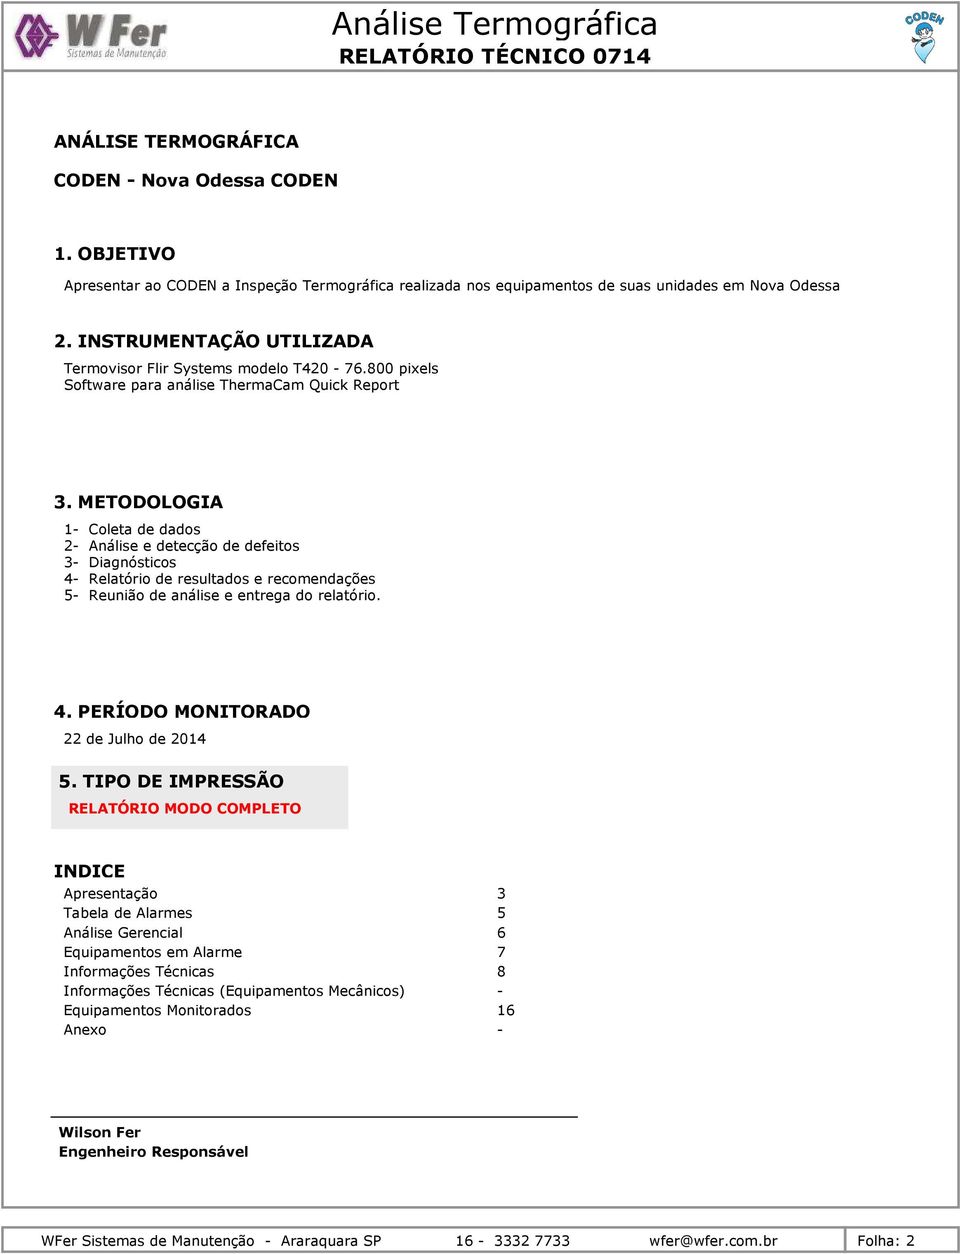 METODOLOGIA 1- Coleta de dados 2- Análise e detecção de defeitos 3- Diagnósticos 4- Relatório de resultados e recomendações 5- Reunião de análise e entrega do relatório. 4. PERÍODO MONITORADO 22 de Julho de 2014 5.